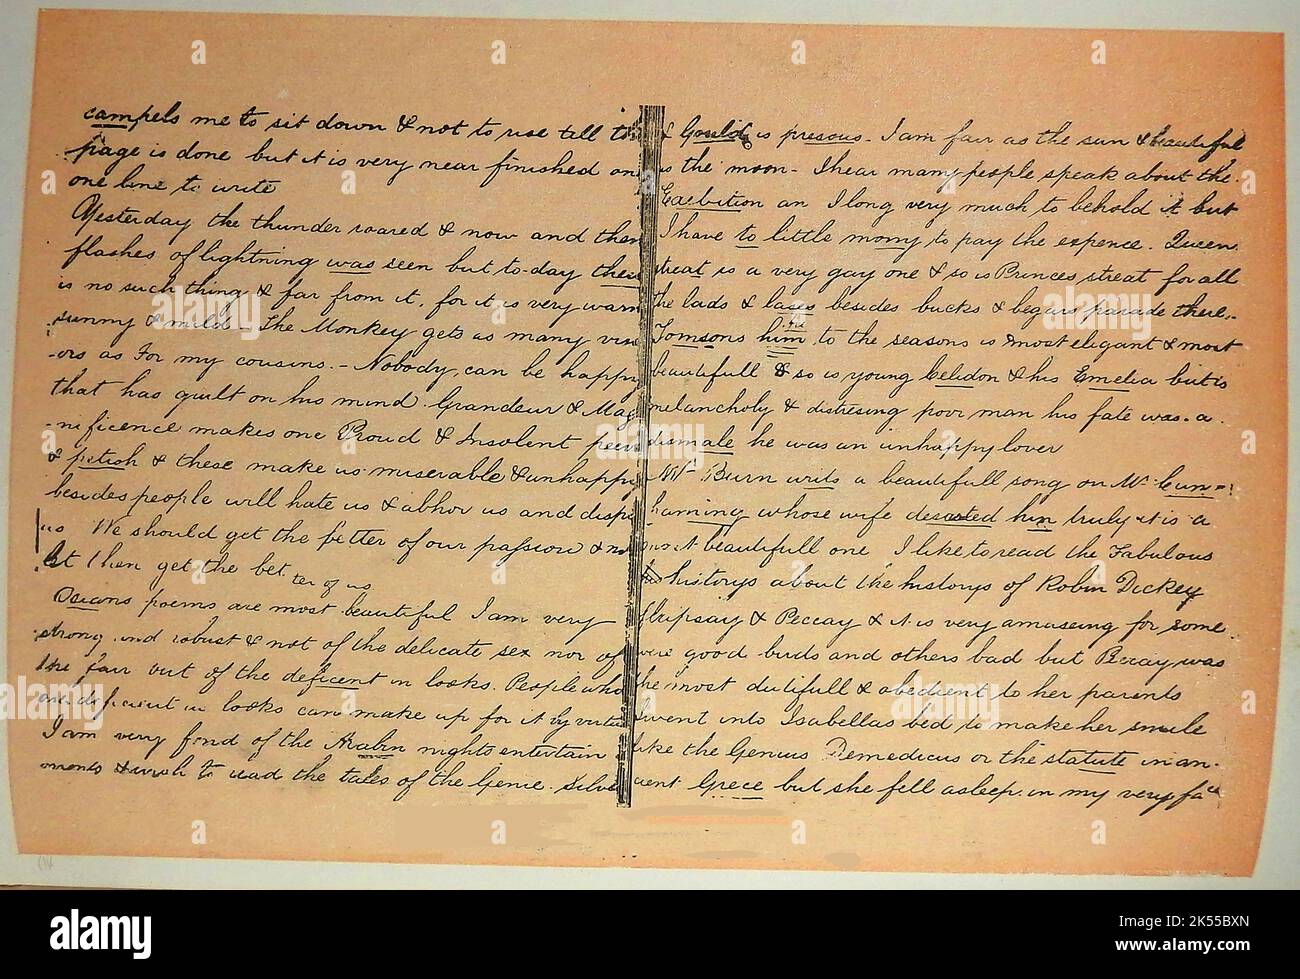 Eine Seite aus Marjory Flemings Tagebuch mit den unterstrichenen Korrekturen einer anderen Person (wahrscheinlich ihre Freundin Isa Keith). Marjorie war ein kindliterarisches Genie Marjory oder Marjorie, Fleming (1803-1811) - Familienname Maidie oder 'Pet Marjorie' / 'Pet Marjory'. Stockfoto